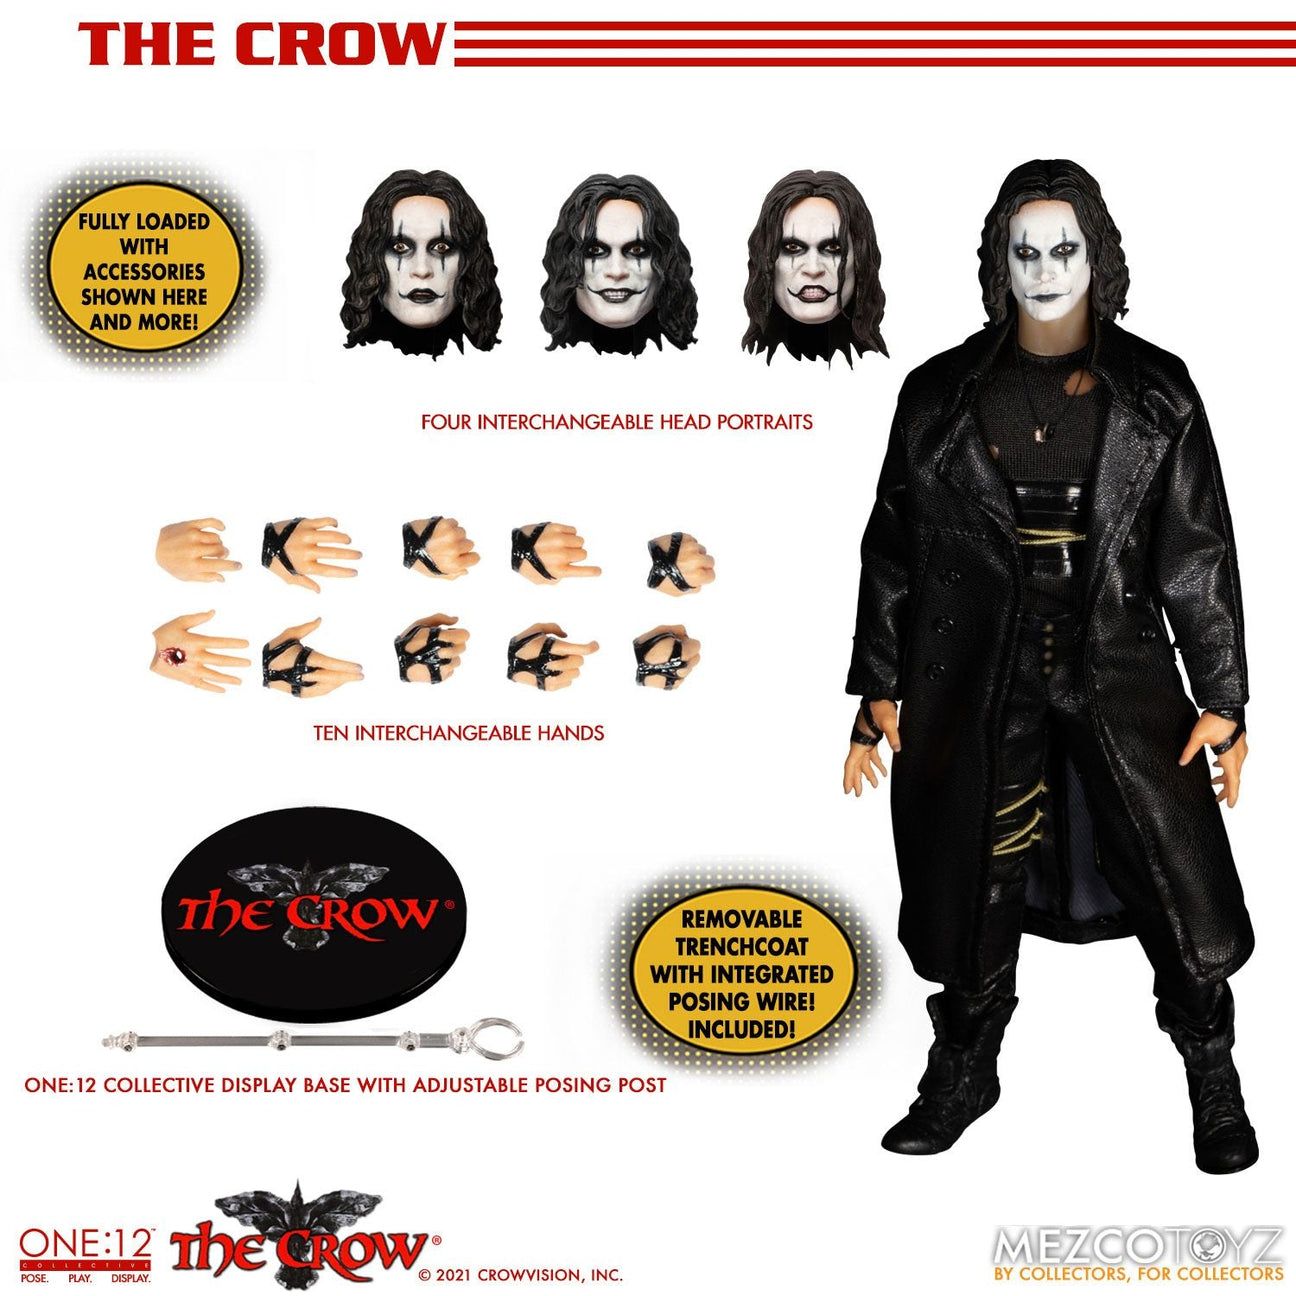 The Crow: Eric Draven-Actionfiguren-Mezco Toys-Mighty Underground